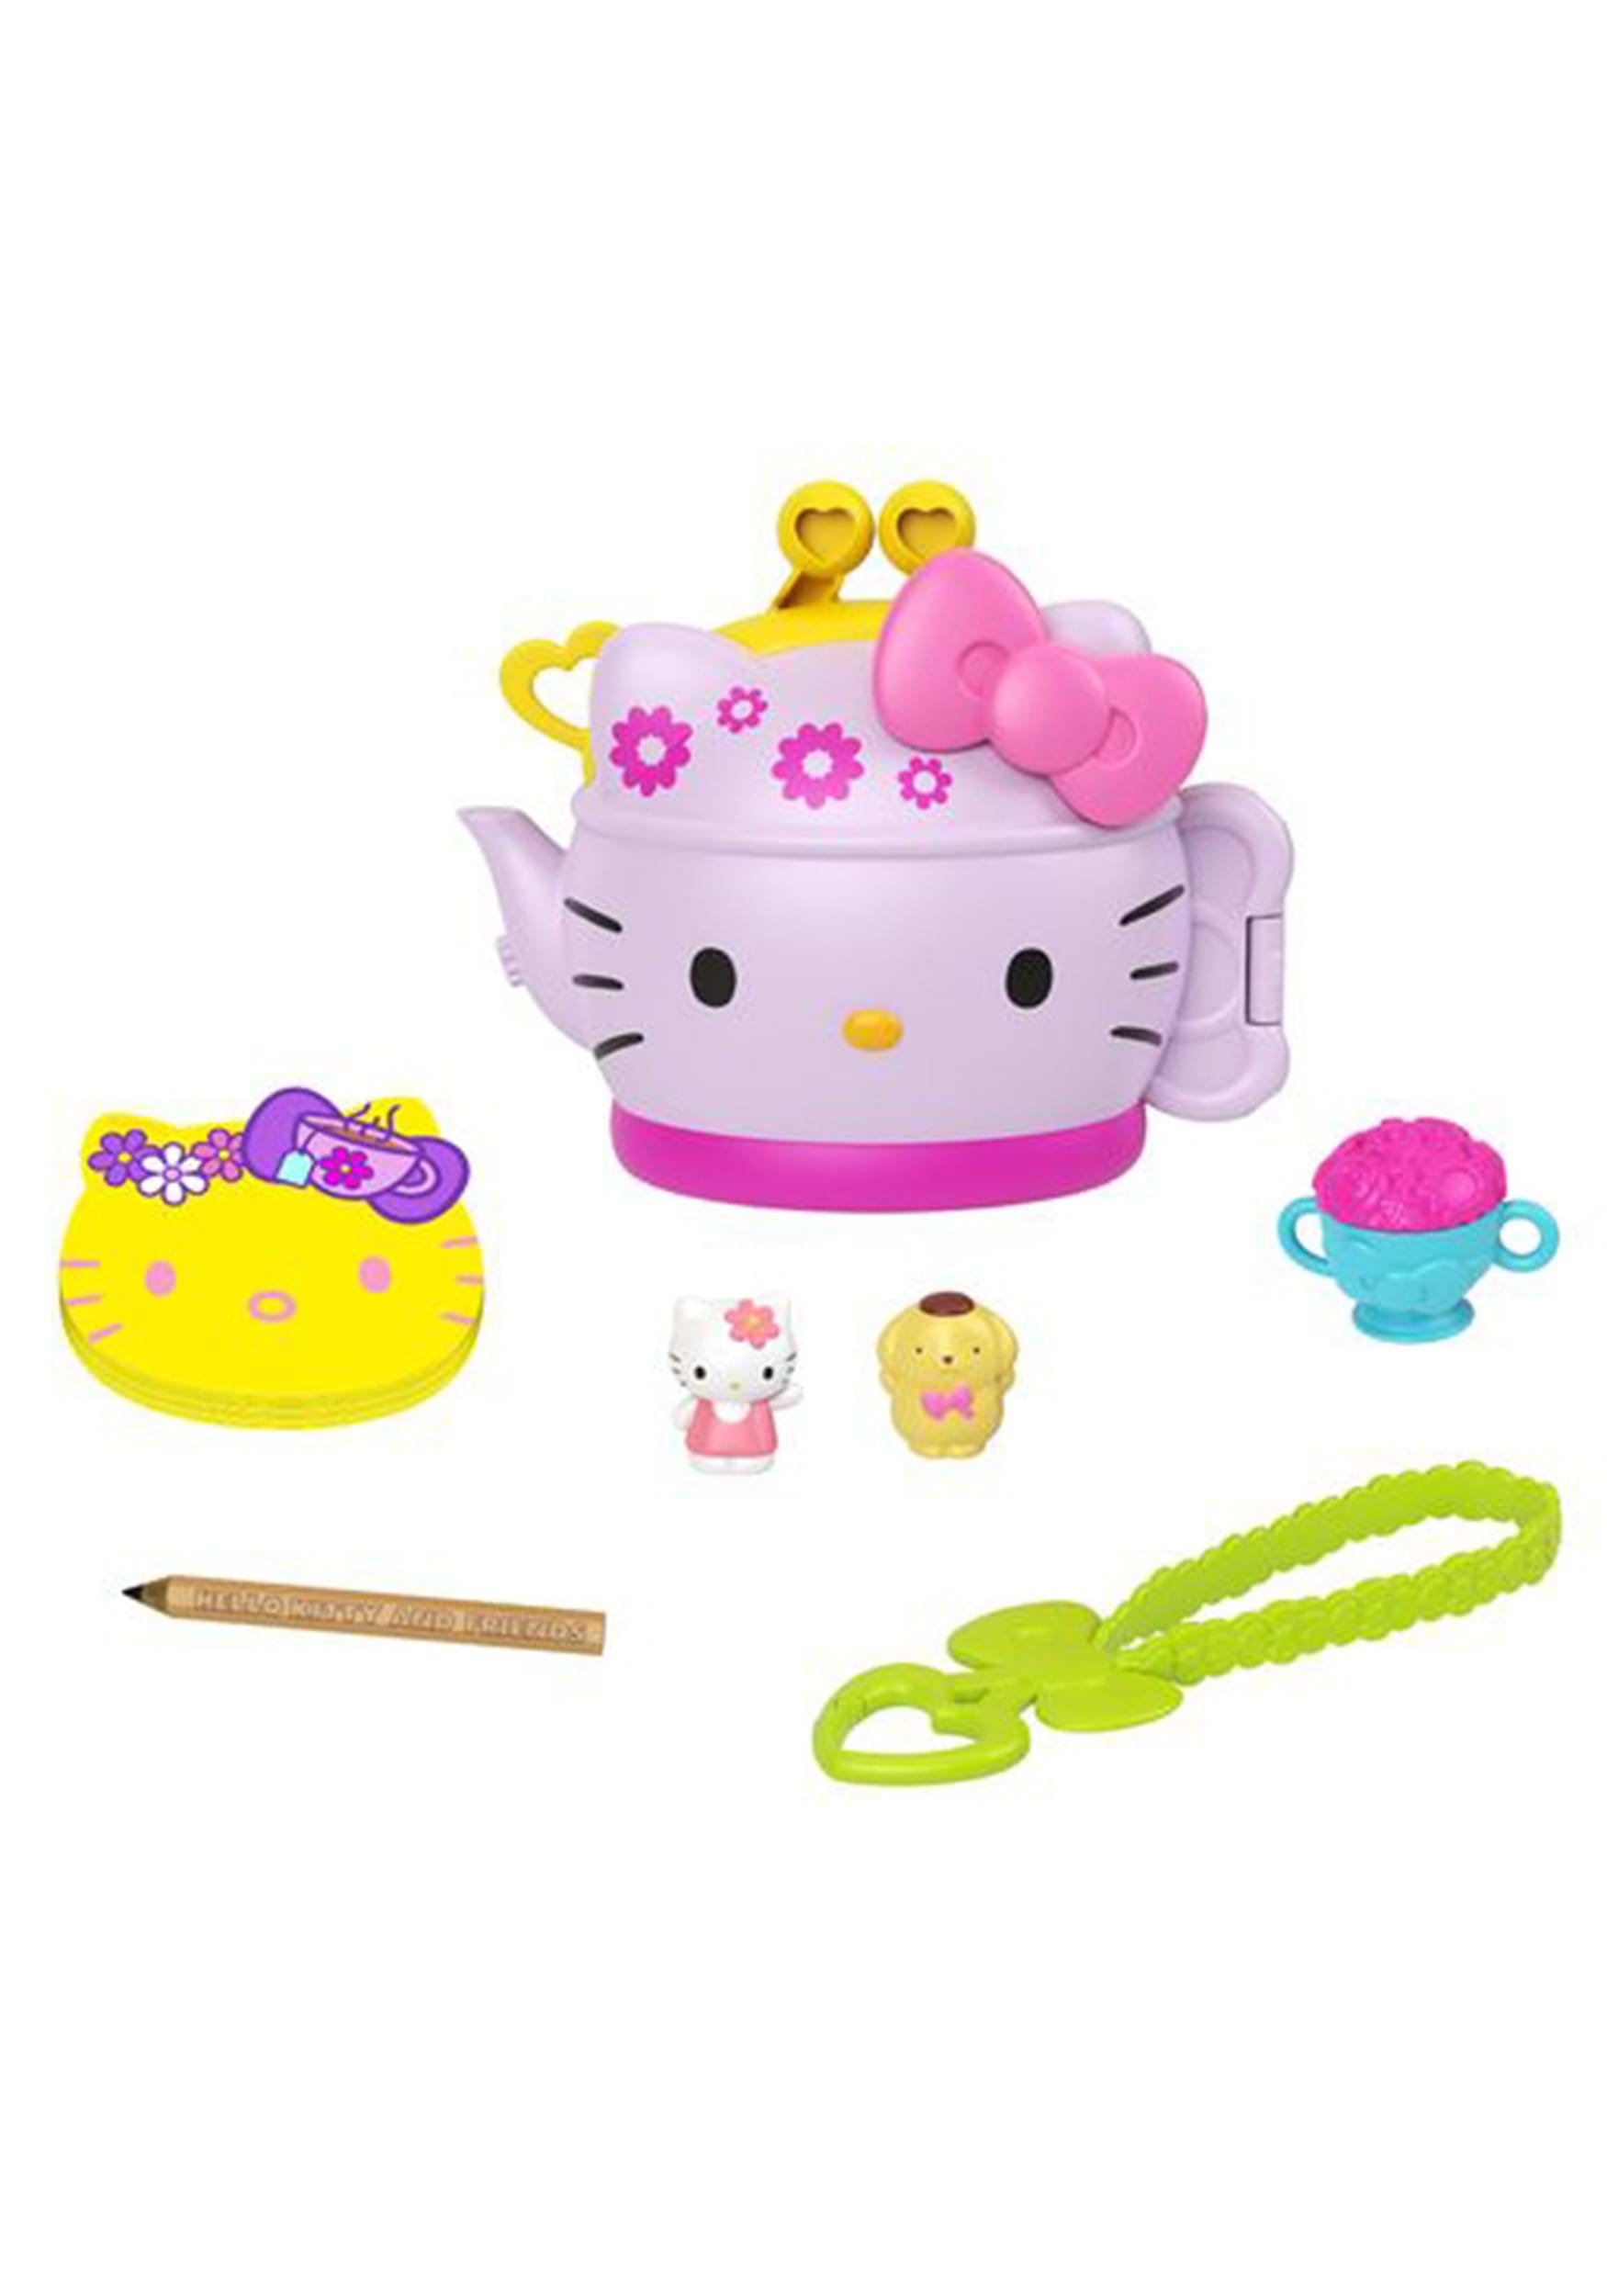 Mattel Hello Kitty & Friends Mini Teapot Playset